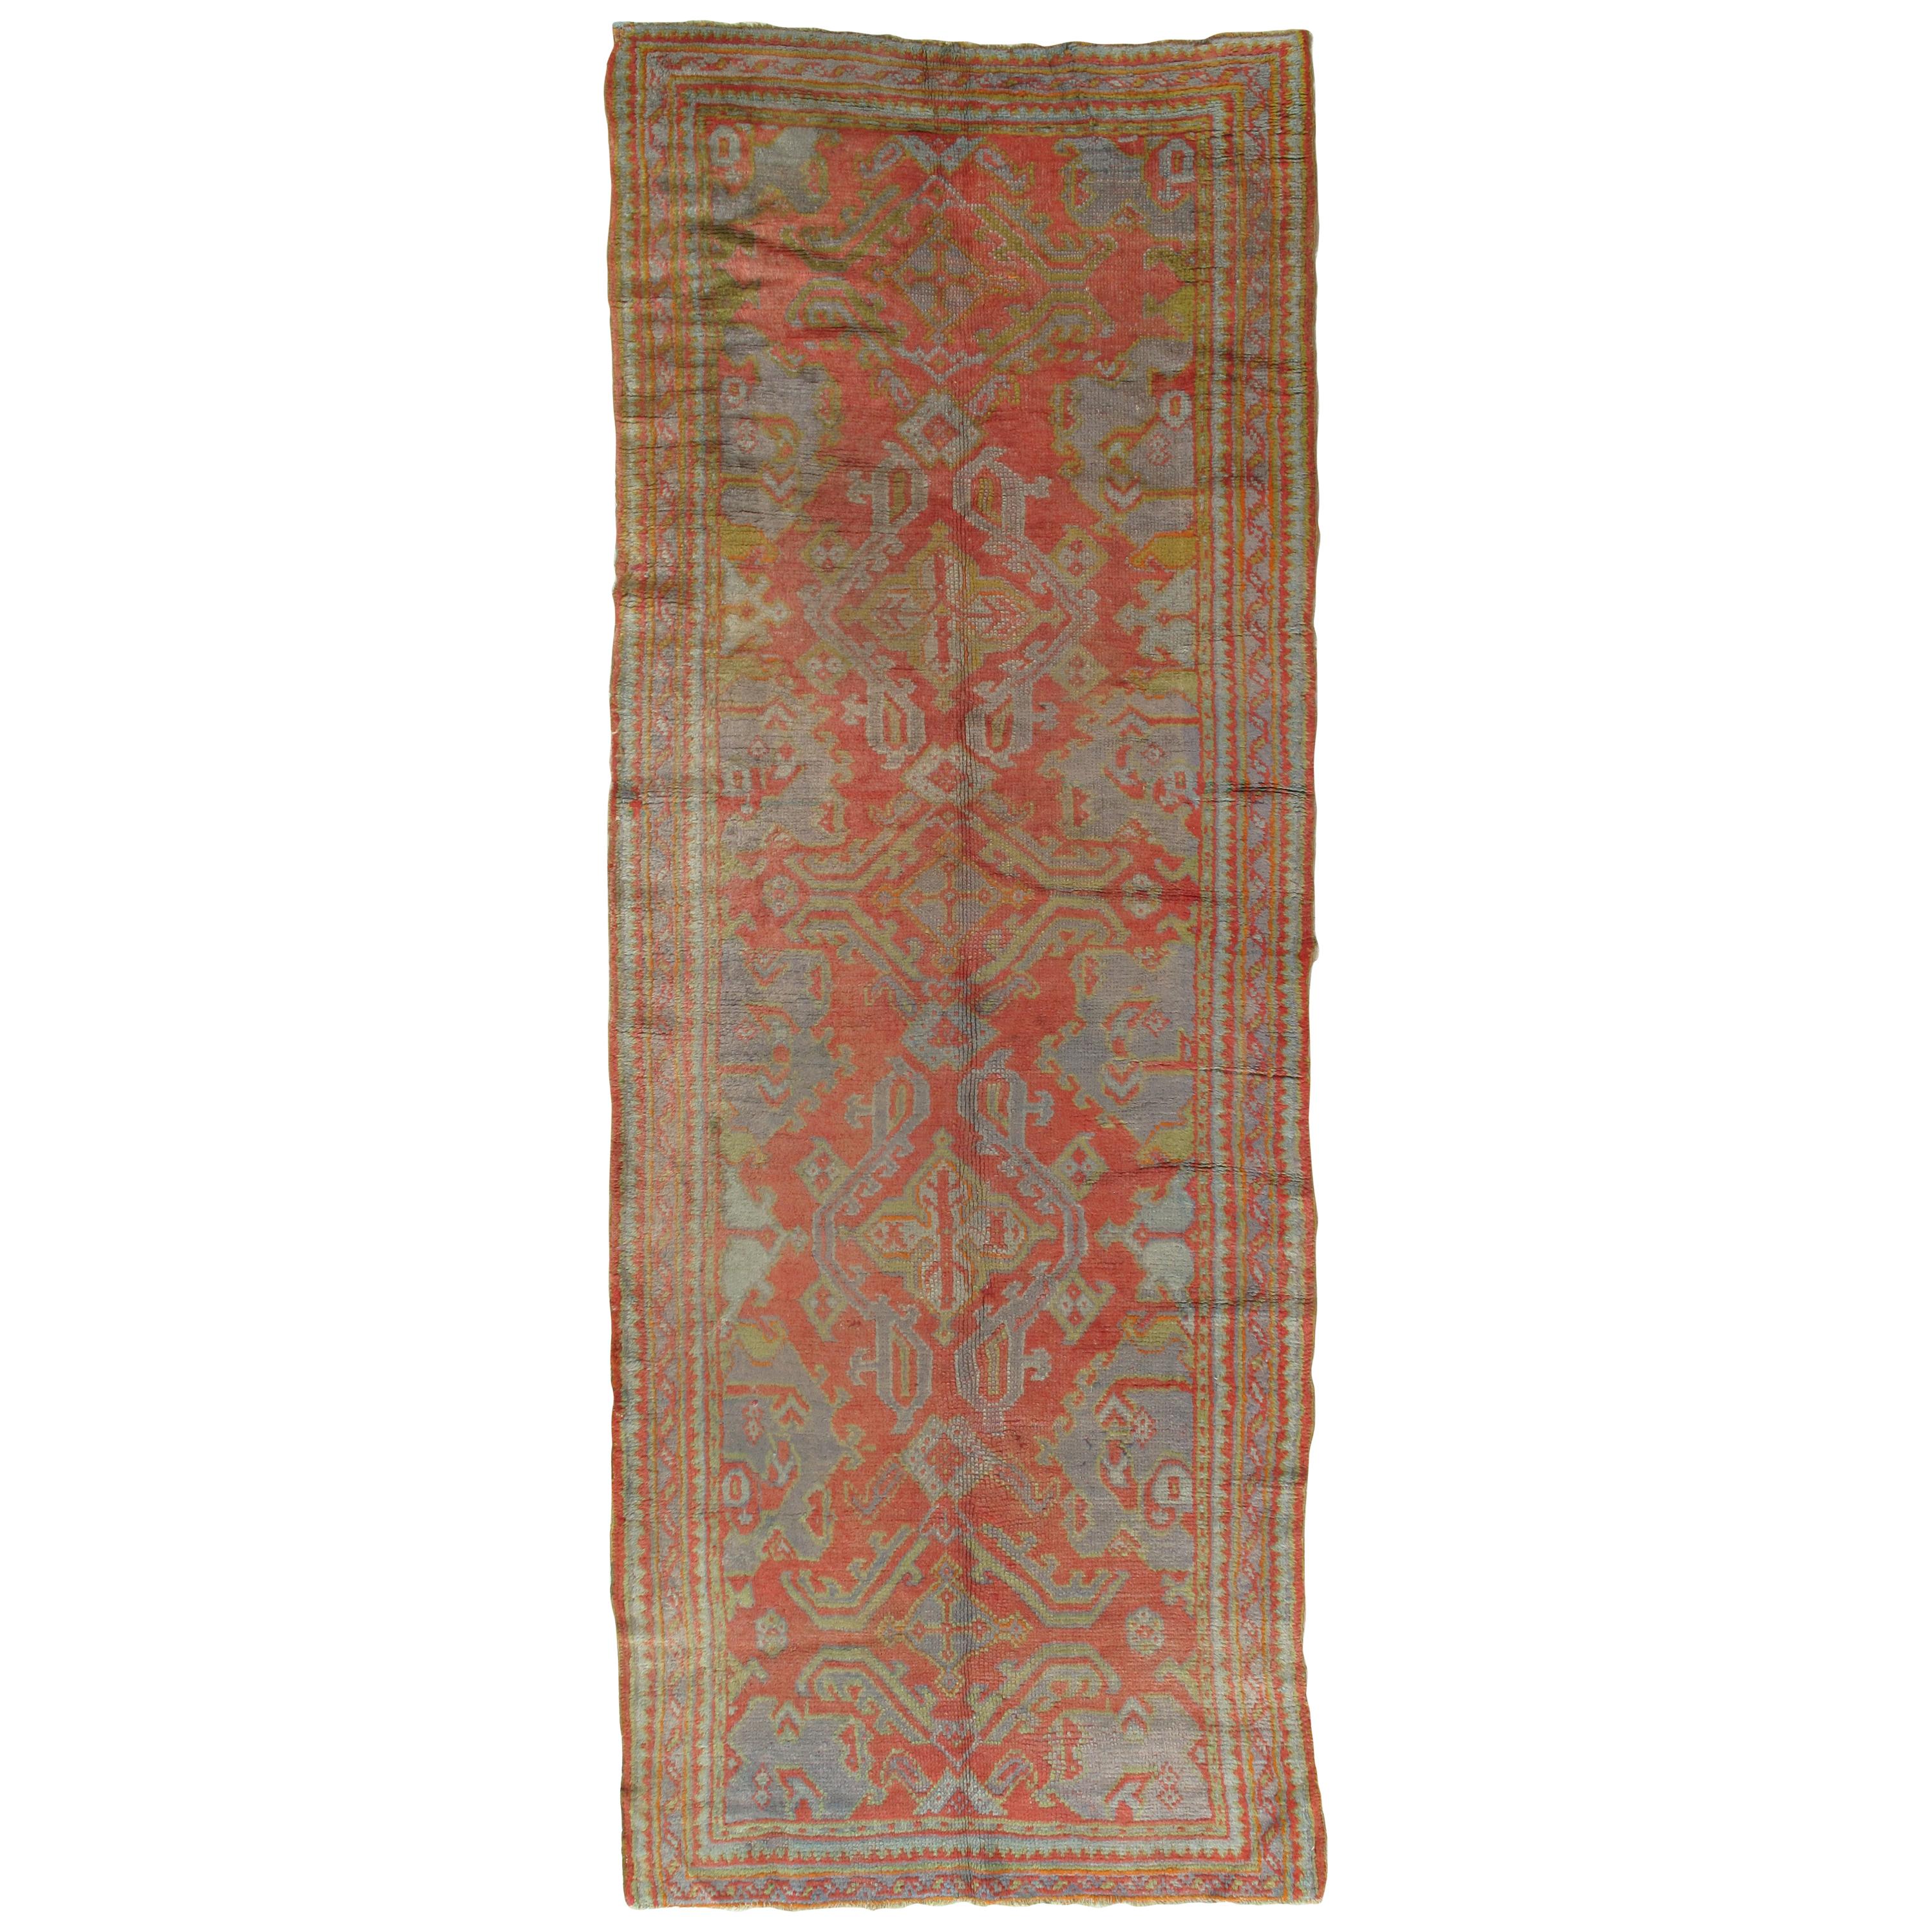 Tapis oriental Oushak, tapis fait à la main corail, bleu clair, safran et vert